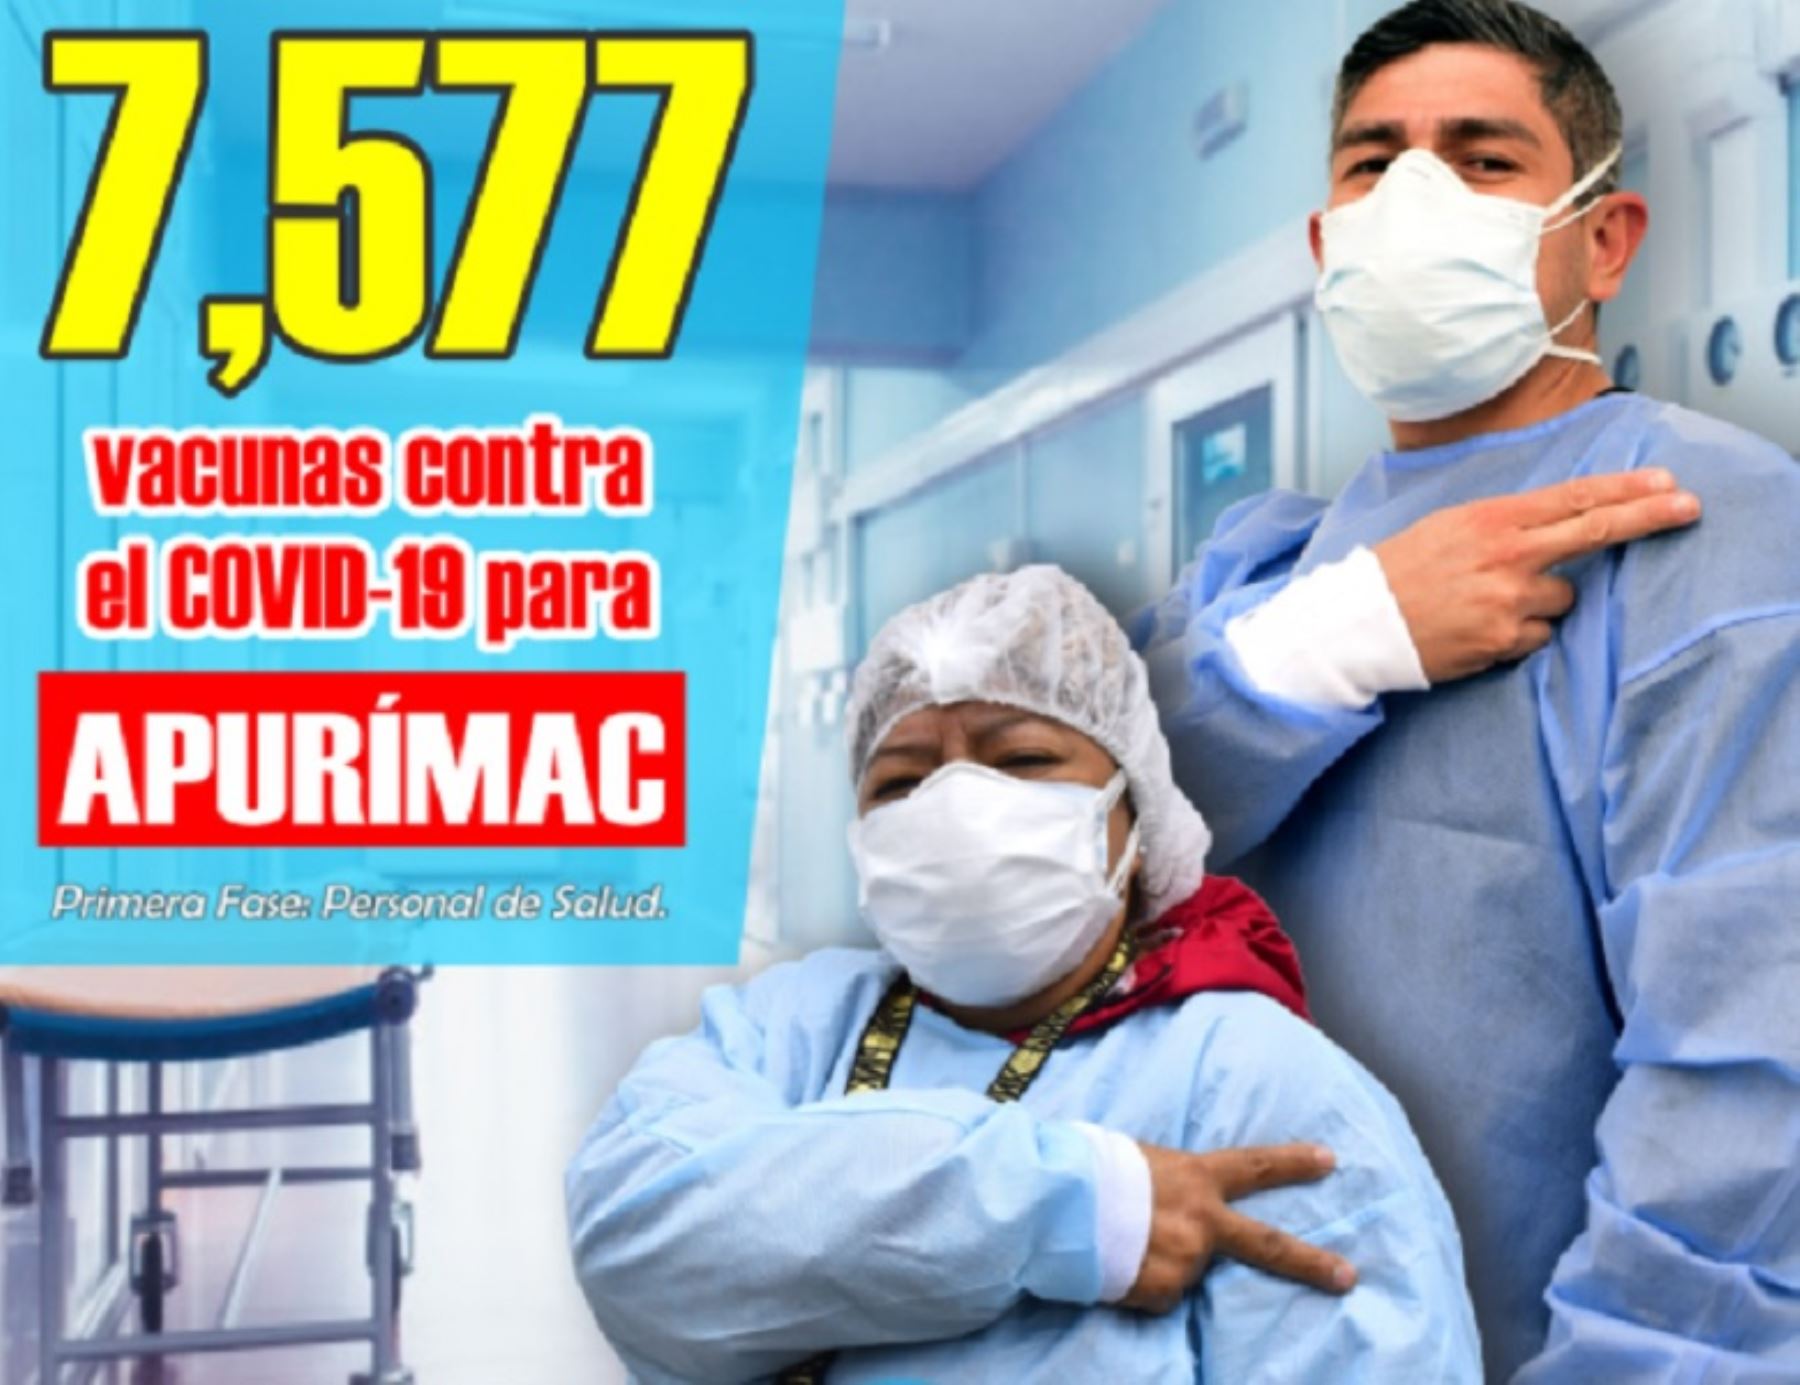 La región Apurímac recibe hoy el primer lote de 7,577 vacunas para inmunizar en primer término al personal de salud de dicho departamento, según el plan de vacunación elaborado por la Dirección Regional de Salud (Diresa).